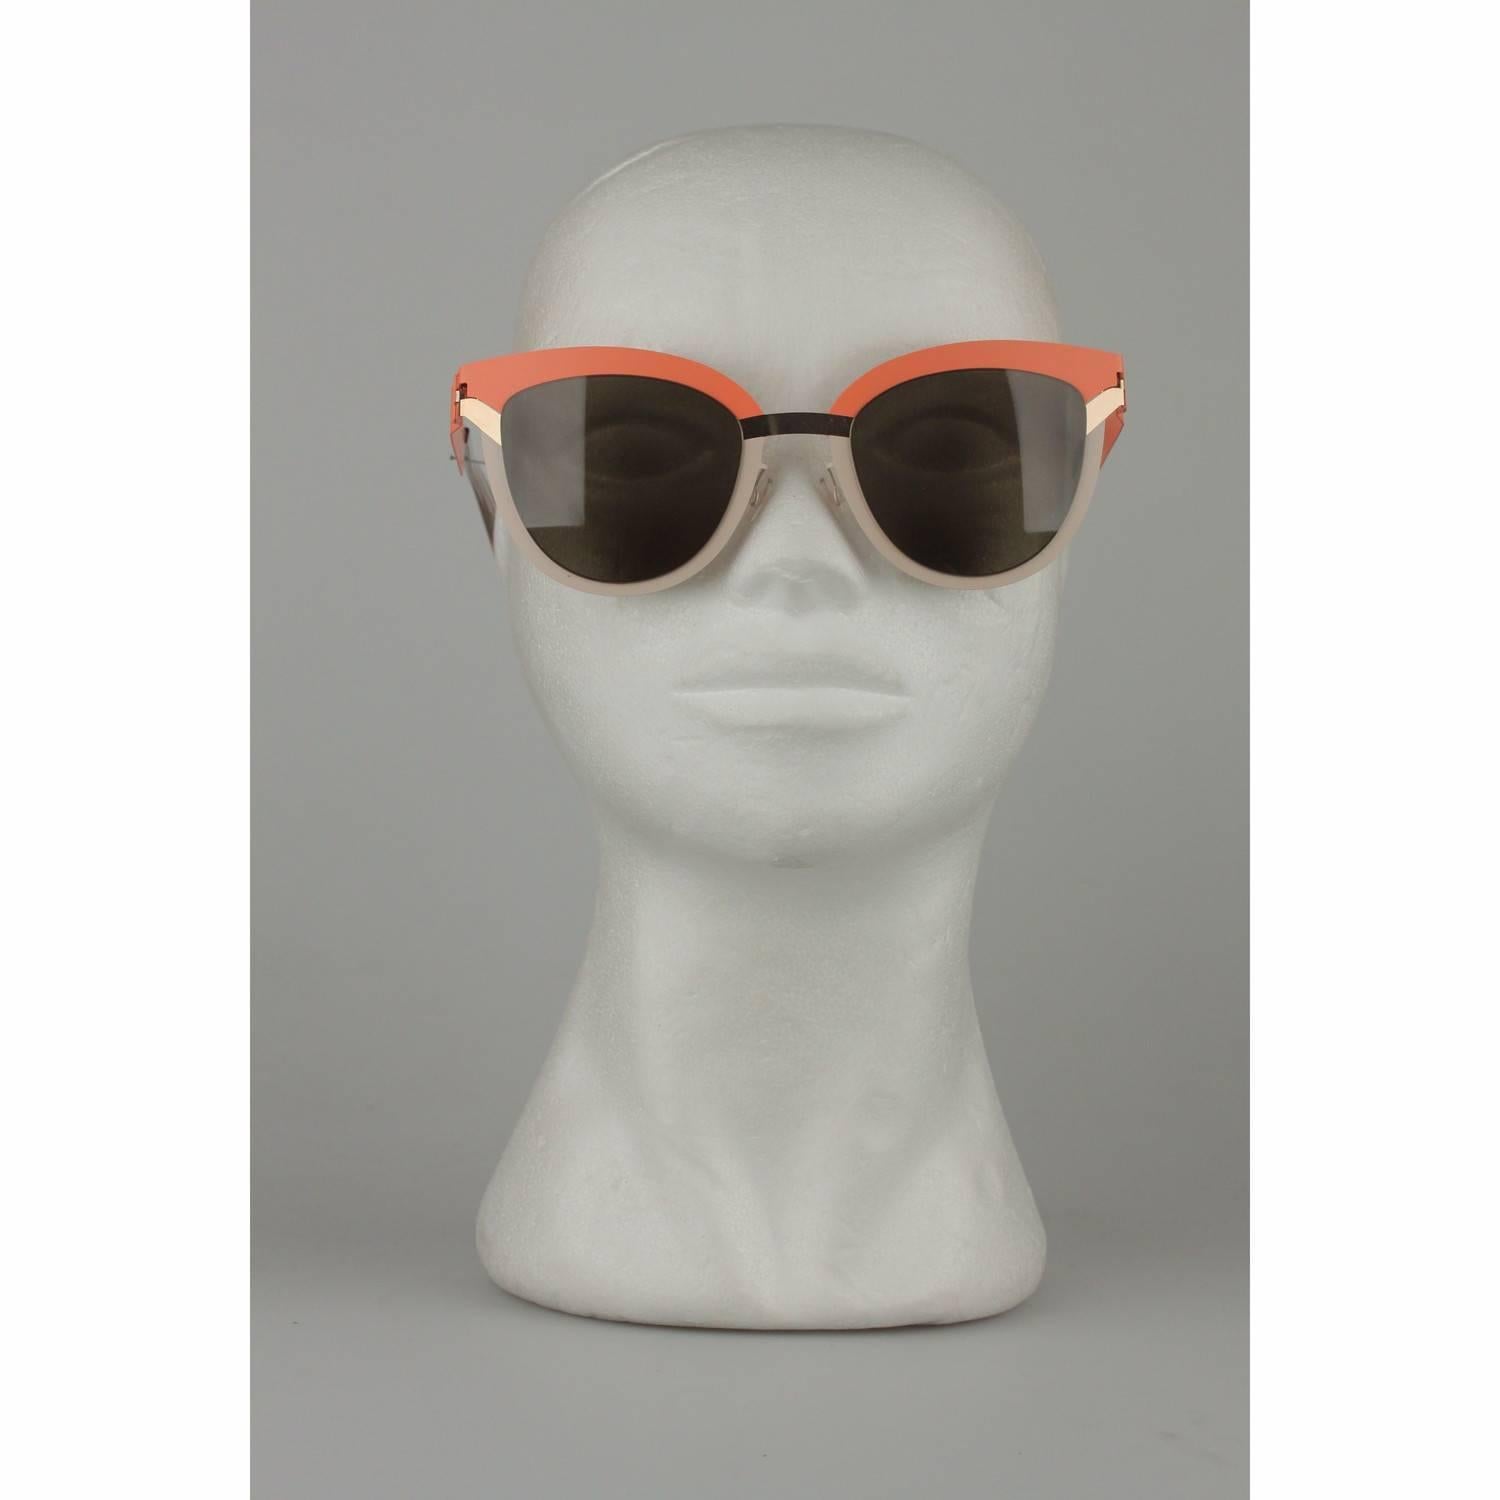 MYKITA STUDIO Mint Sunglasses S8 Tangerine Desert Modules Green Lens 1